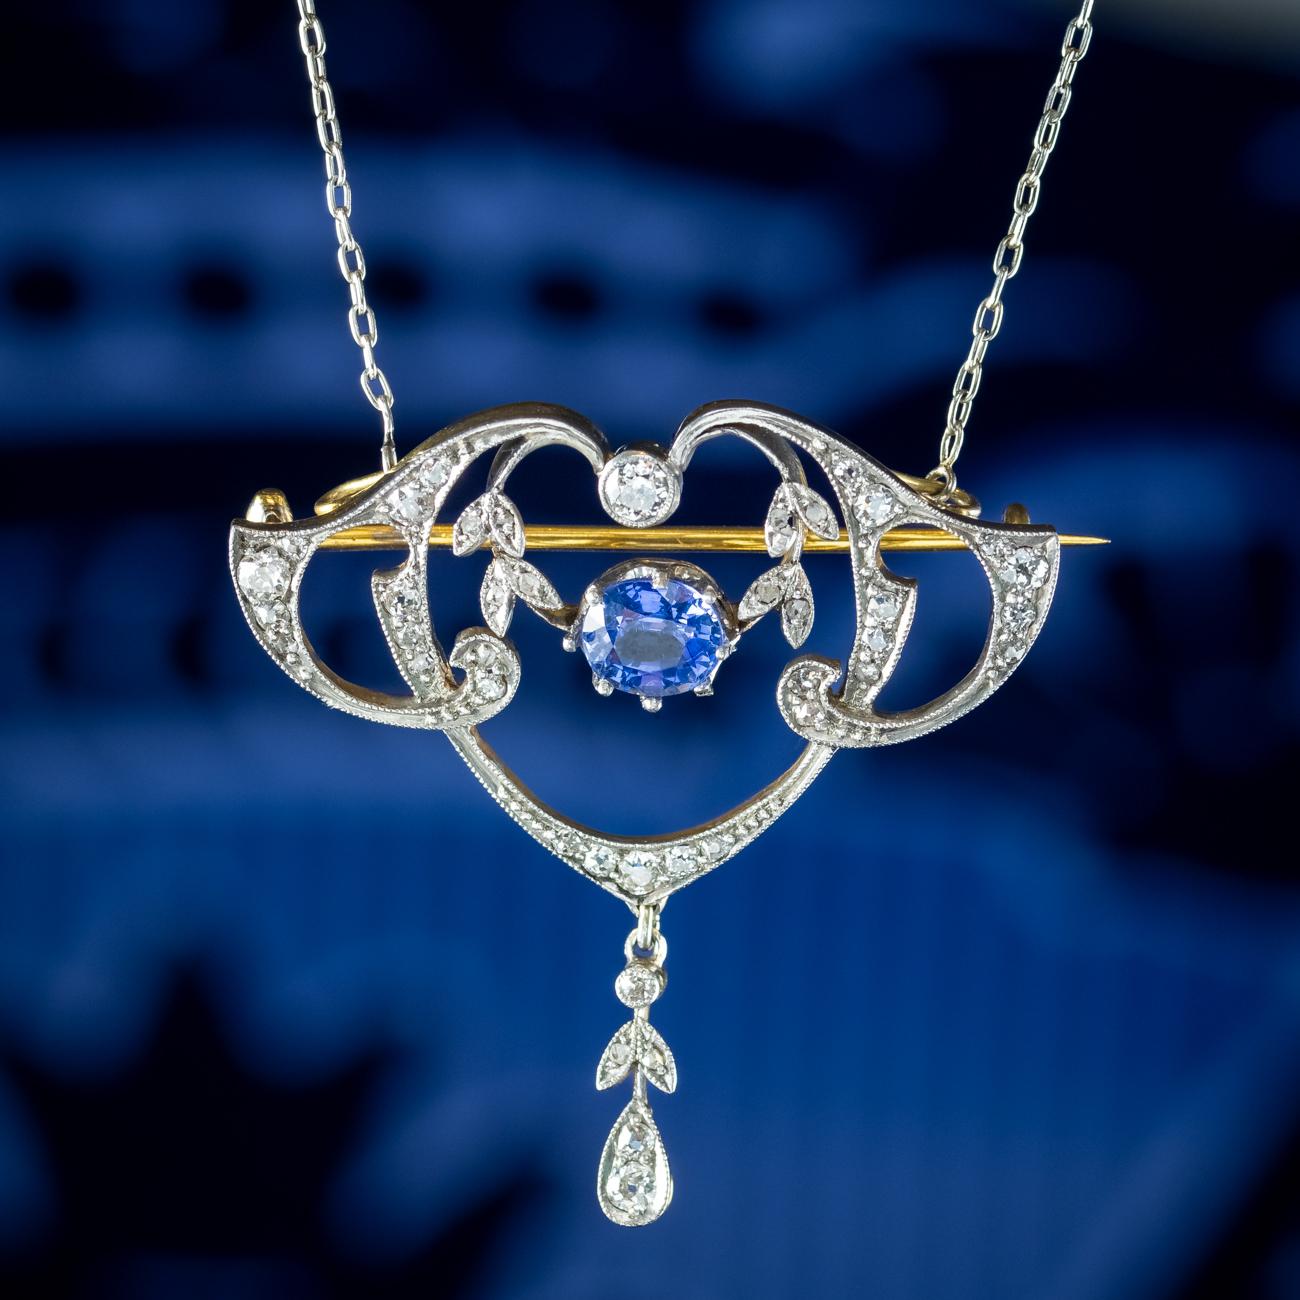 Antique Edwardian Ceylon Sapphire Diamond Lavaliere Pendant Necklace With Cert For Sale 2